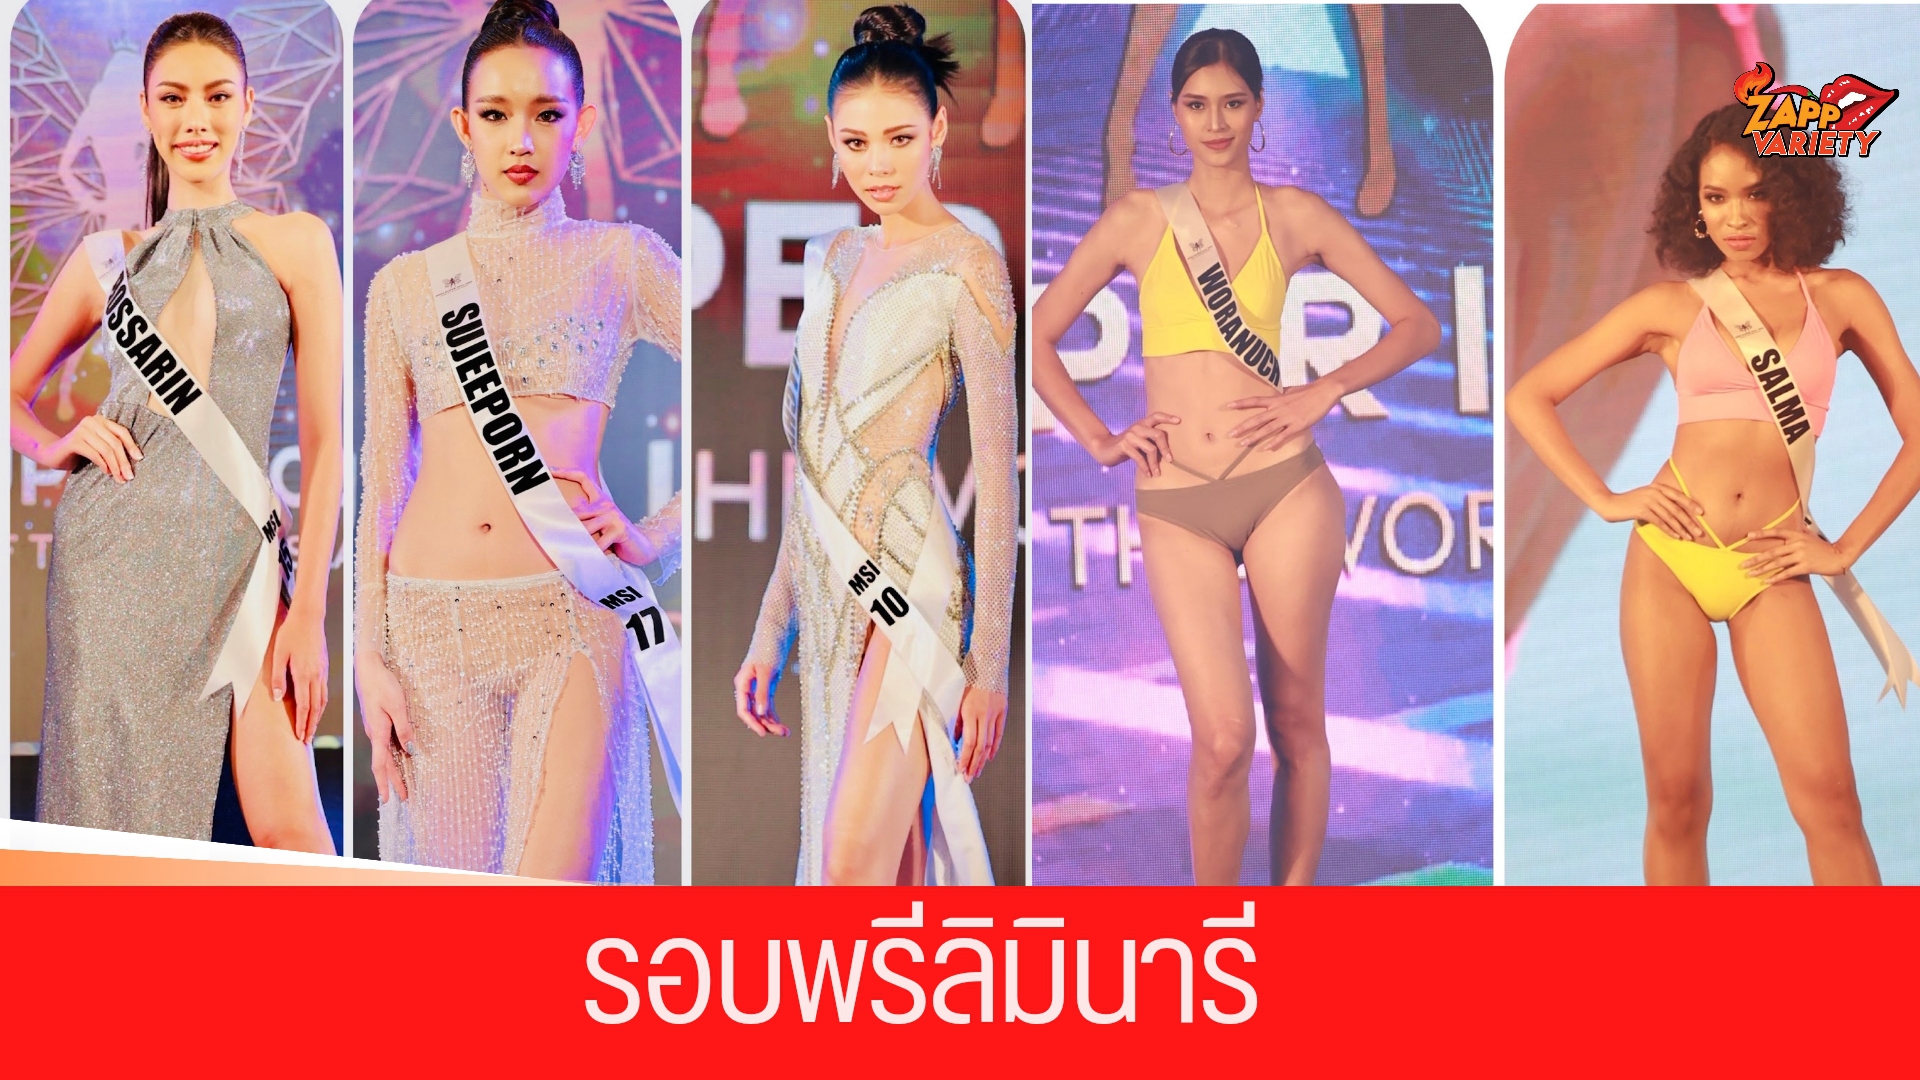 สวยสะกดทุกสายตา มิสซุปเปอร์ไอดอลไทยแลนด์ Miss Super Idol Thailand 2022 รอบพรีลิมินารี โชว์ ชุดราตรี-ชุดว่ายน้ำ สุดอลัง!!!